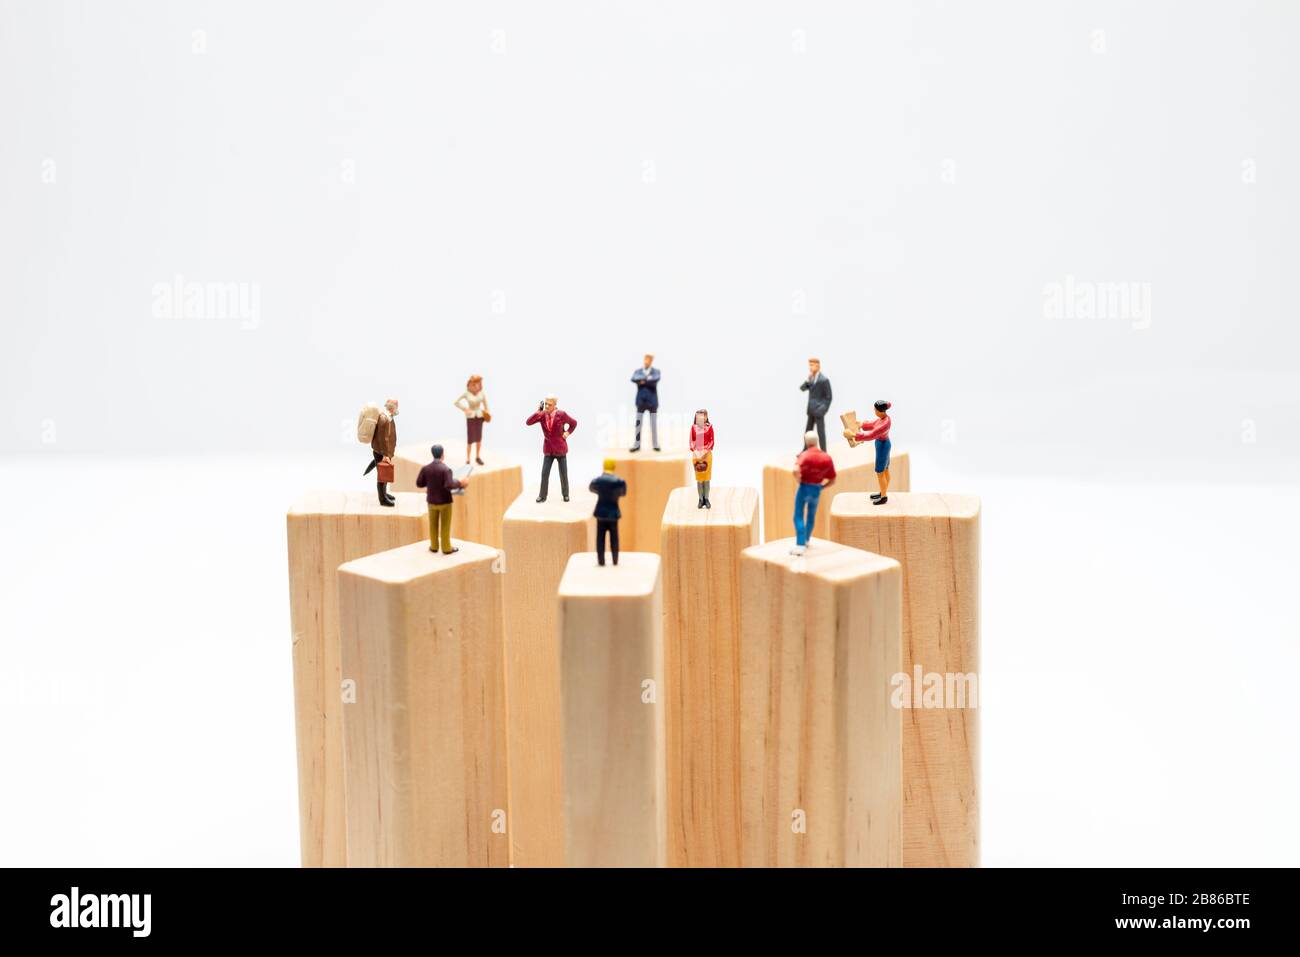 Giocattoli in miniatura in piedi su blocco di legno - distanza sociale, antisociale o concetto di lavoro di squadra. Foto Stock